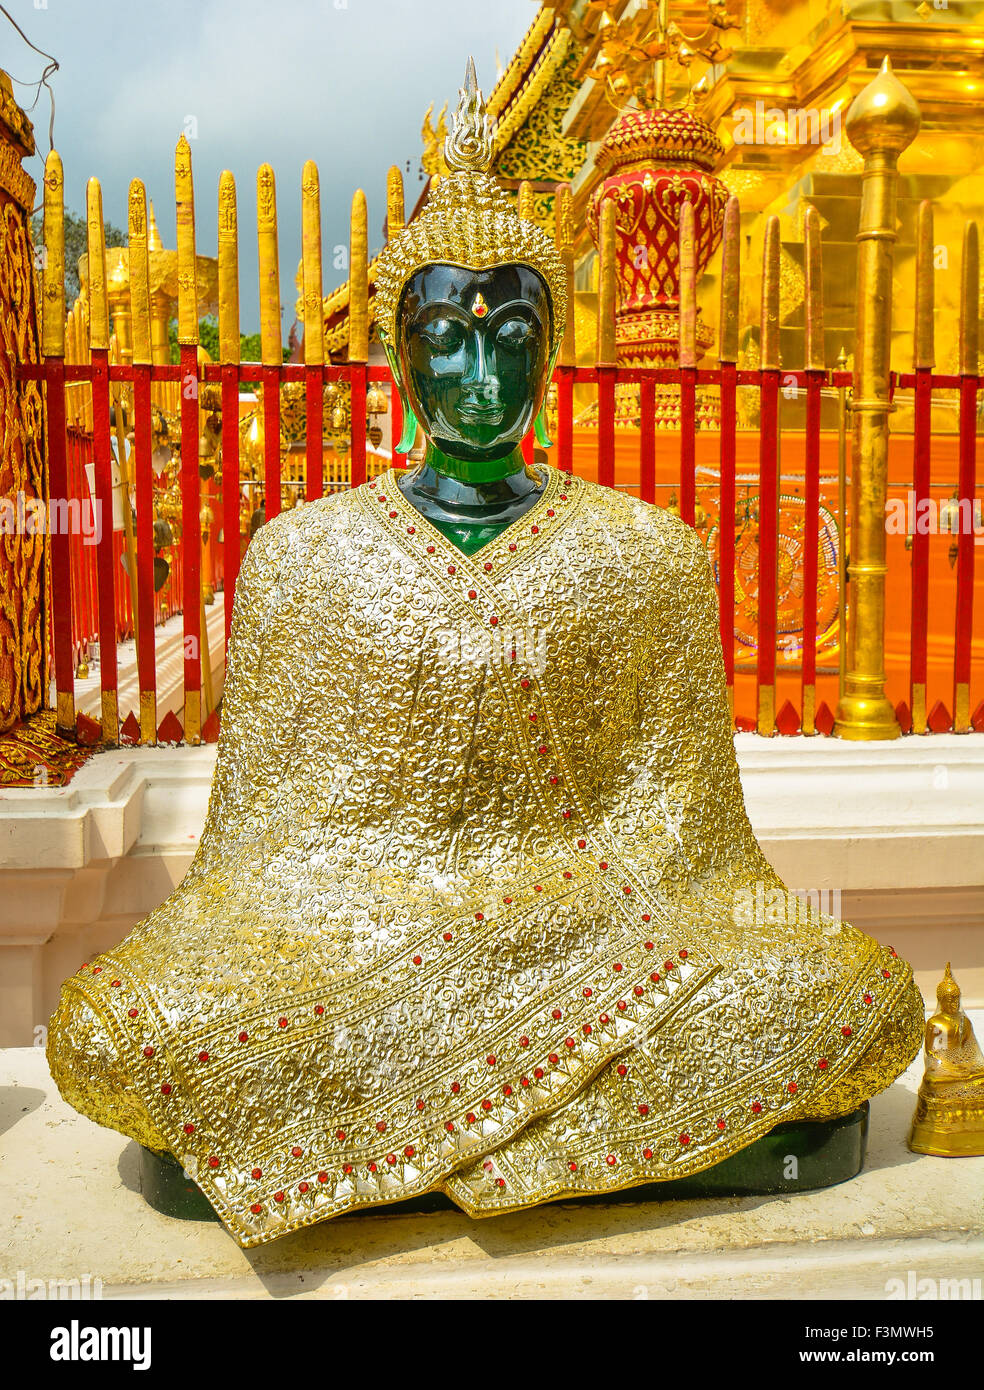 Bouddha de Jade revêtu de tissu doré, Wat Phra That Doi Suthep - Chiang Mai, Thaïlande Banque D'Images